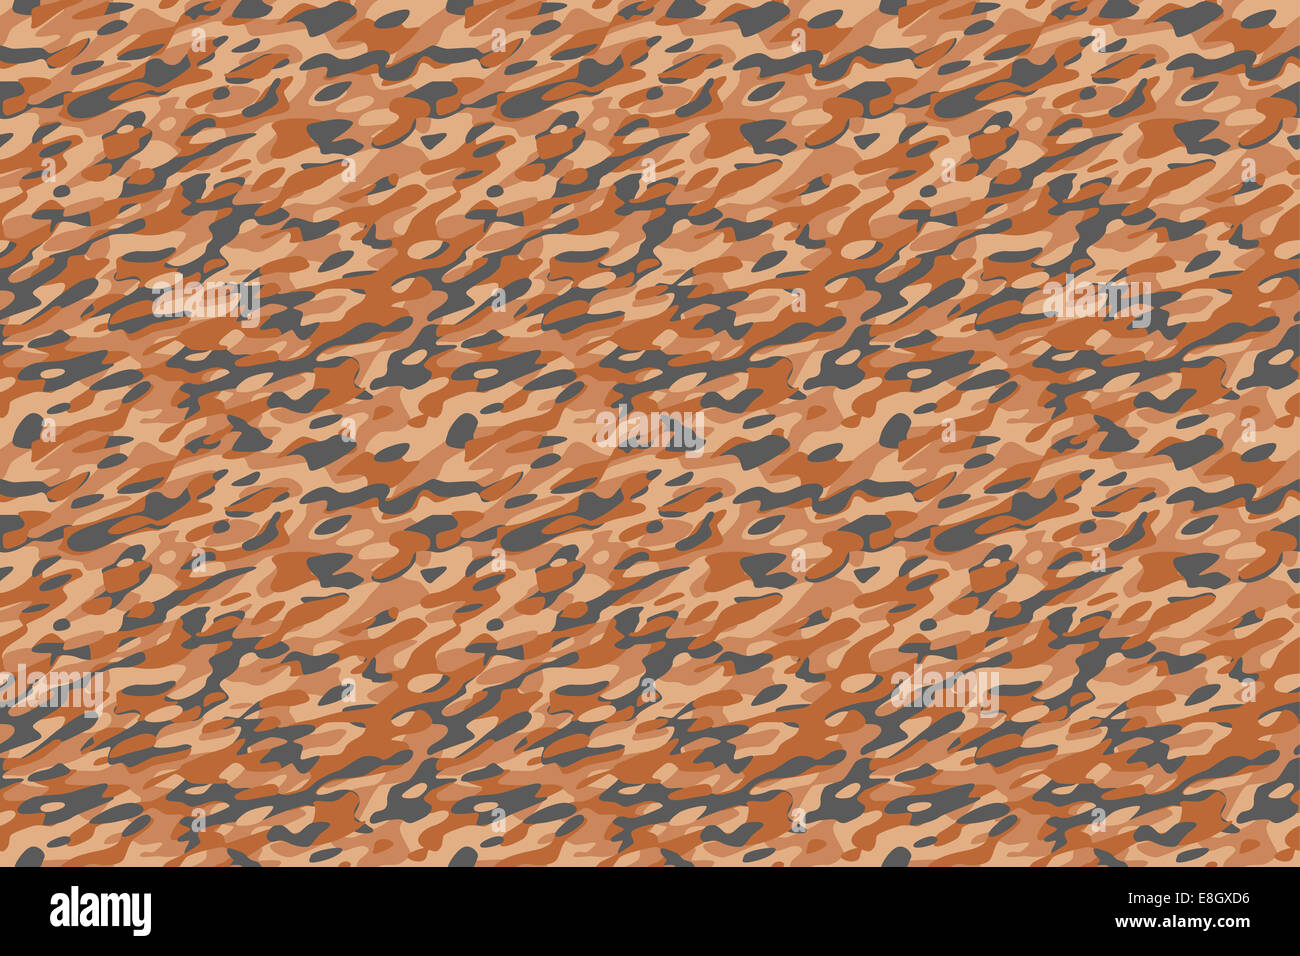 Camouflage Wüste braunen Hintergrund - Wüste braune militärische Tarnung Textile Muster. Allen Seiten zusammenpassen perfekt nahtlos Stockfoto